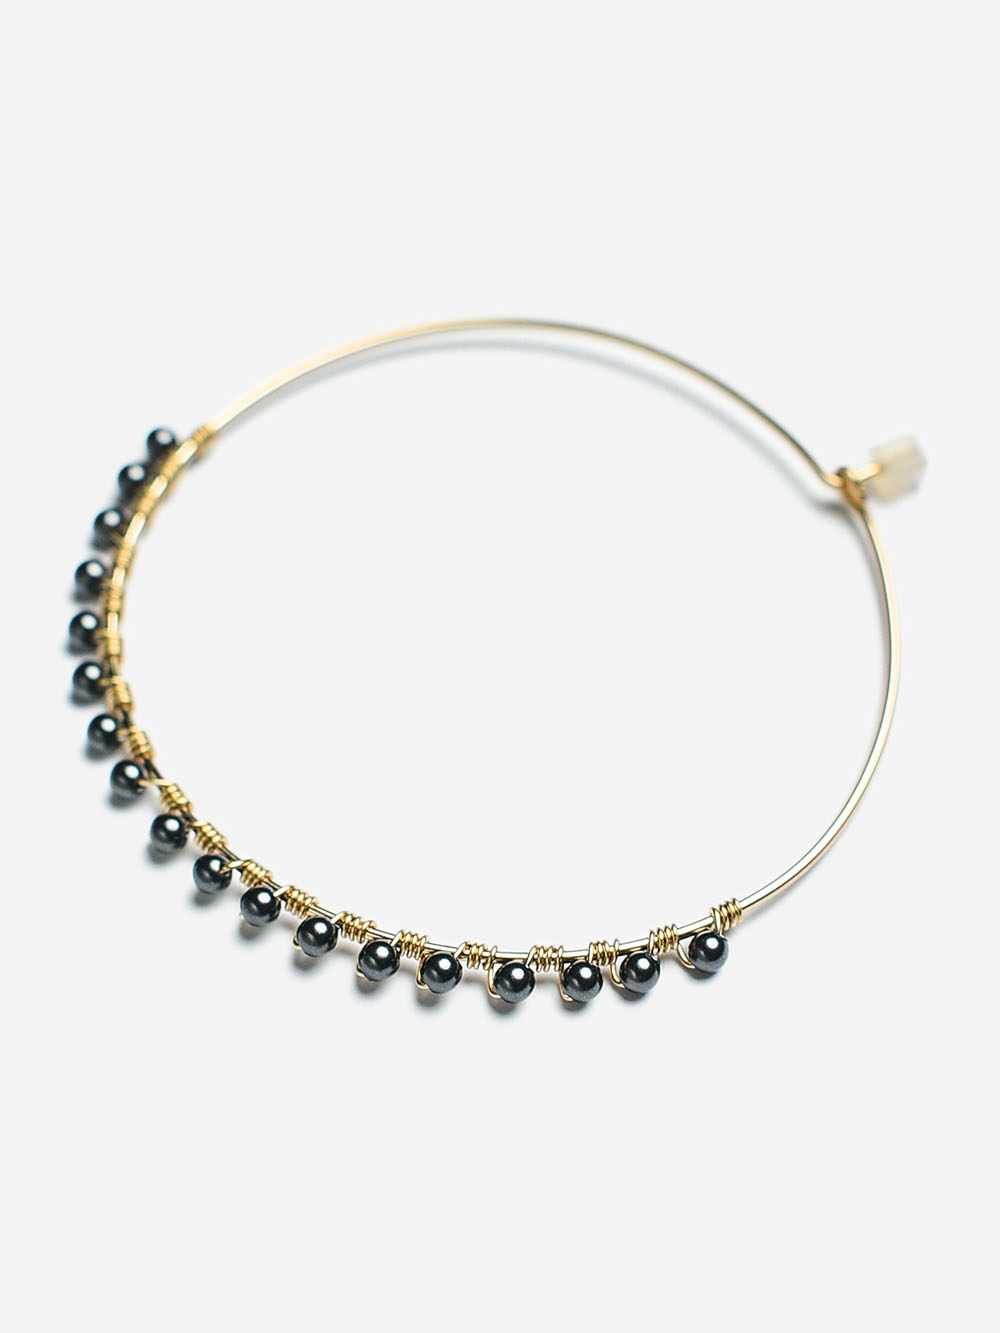 14k gold filled hoop earrings with black pearls